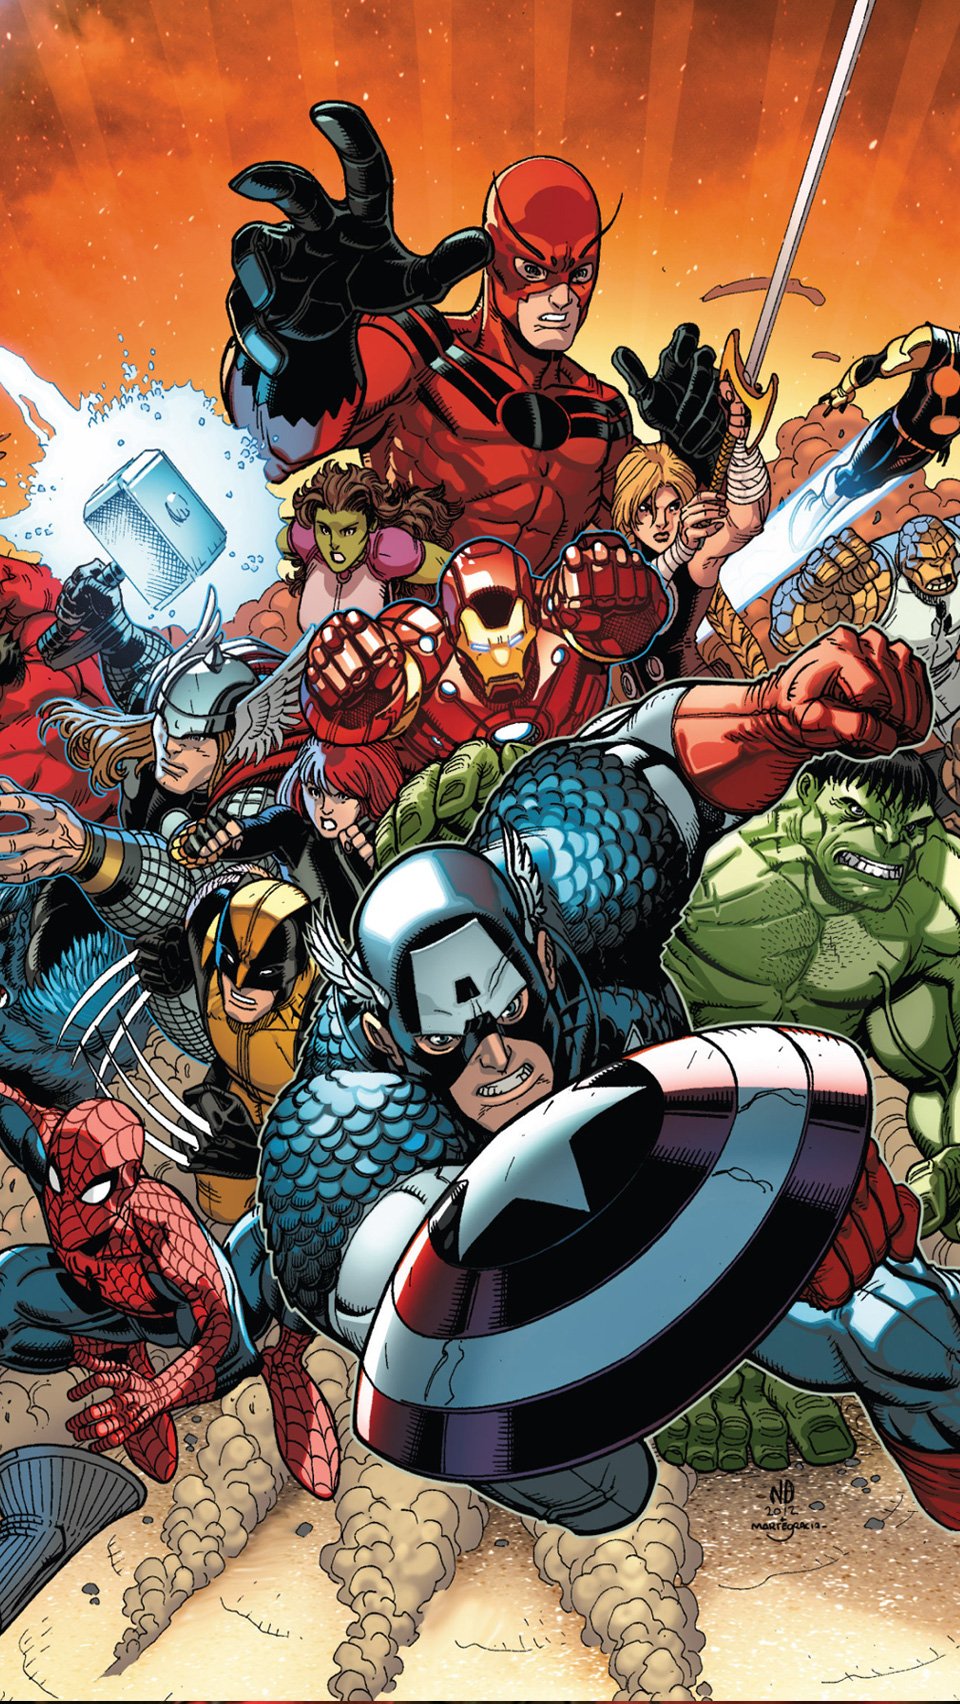 Wallpaper: Avengers Cartoon Wallpaper Iphone